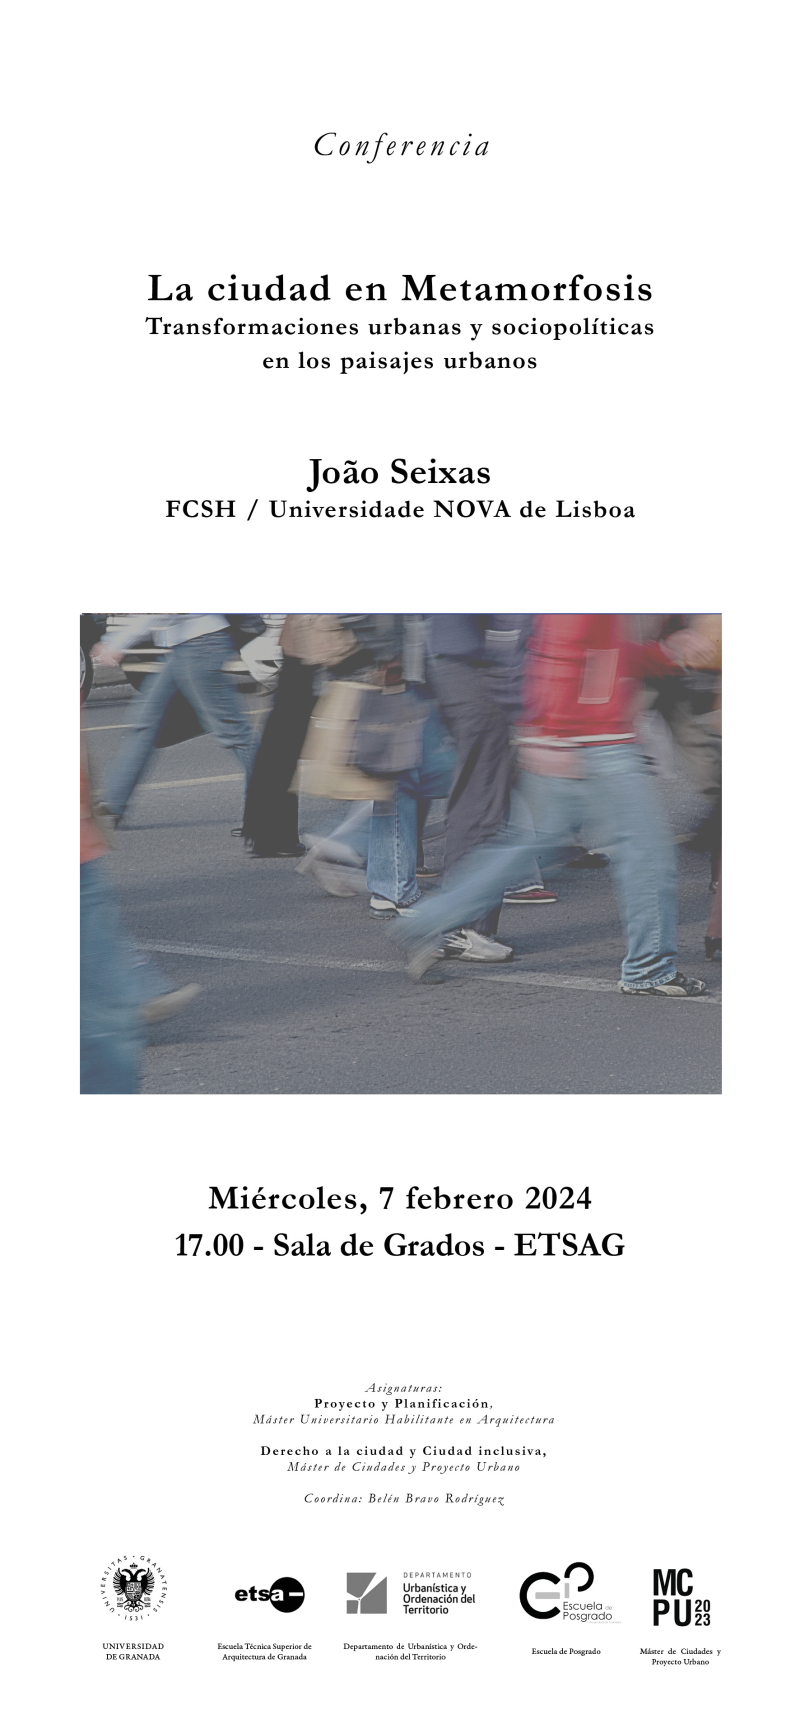 Cartel de la conferencia de João Seixas